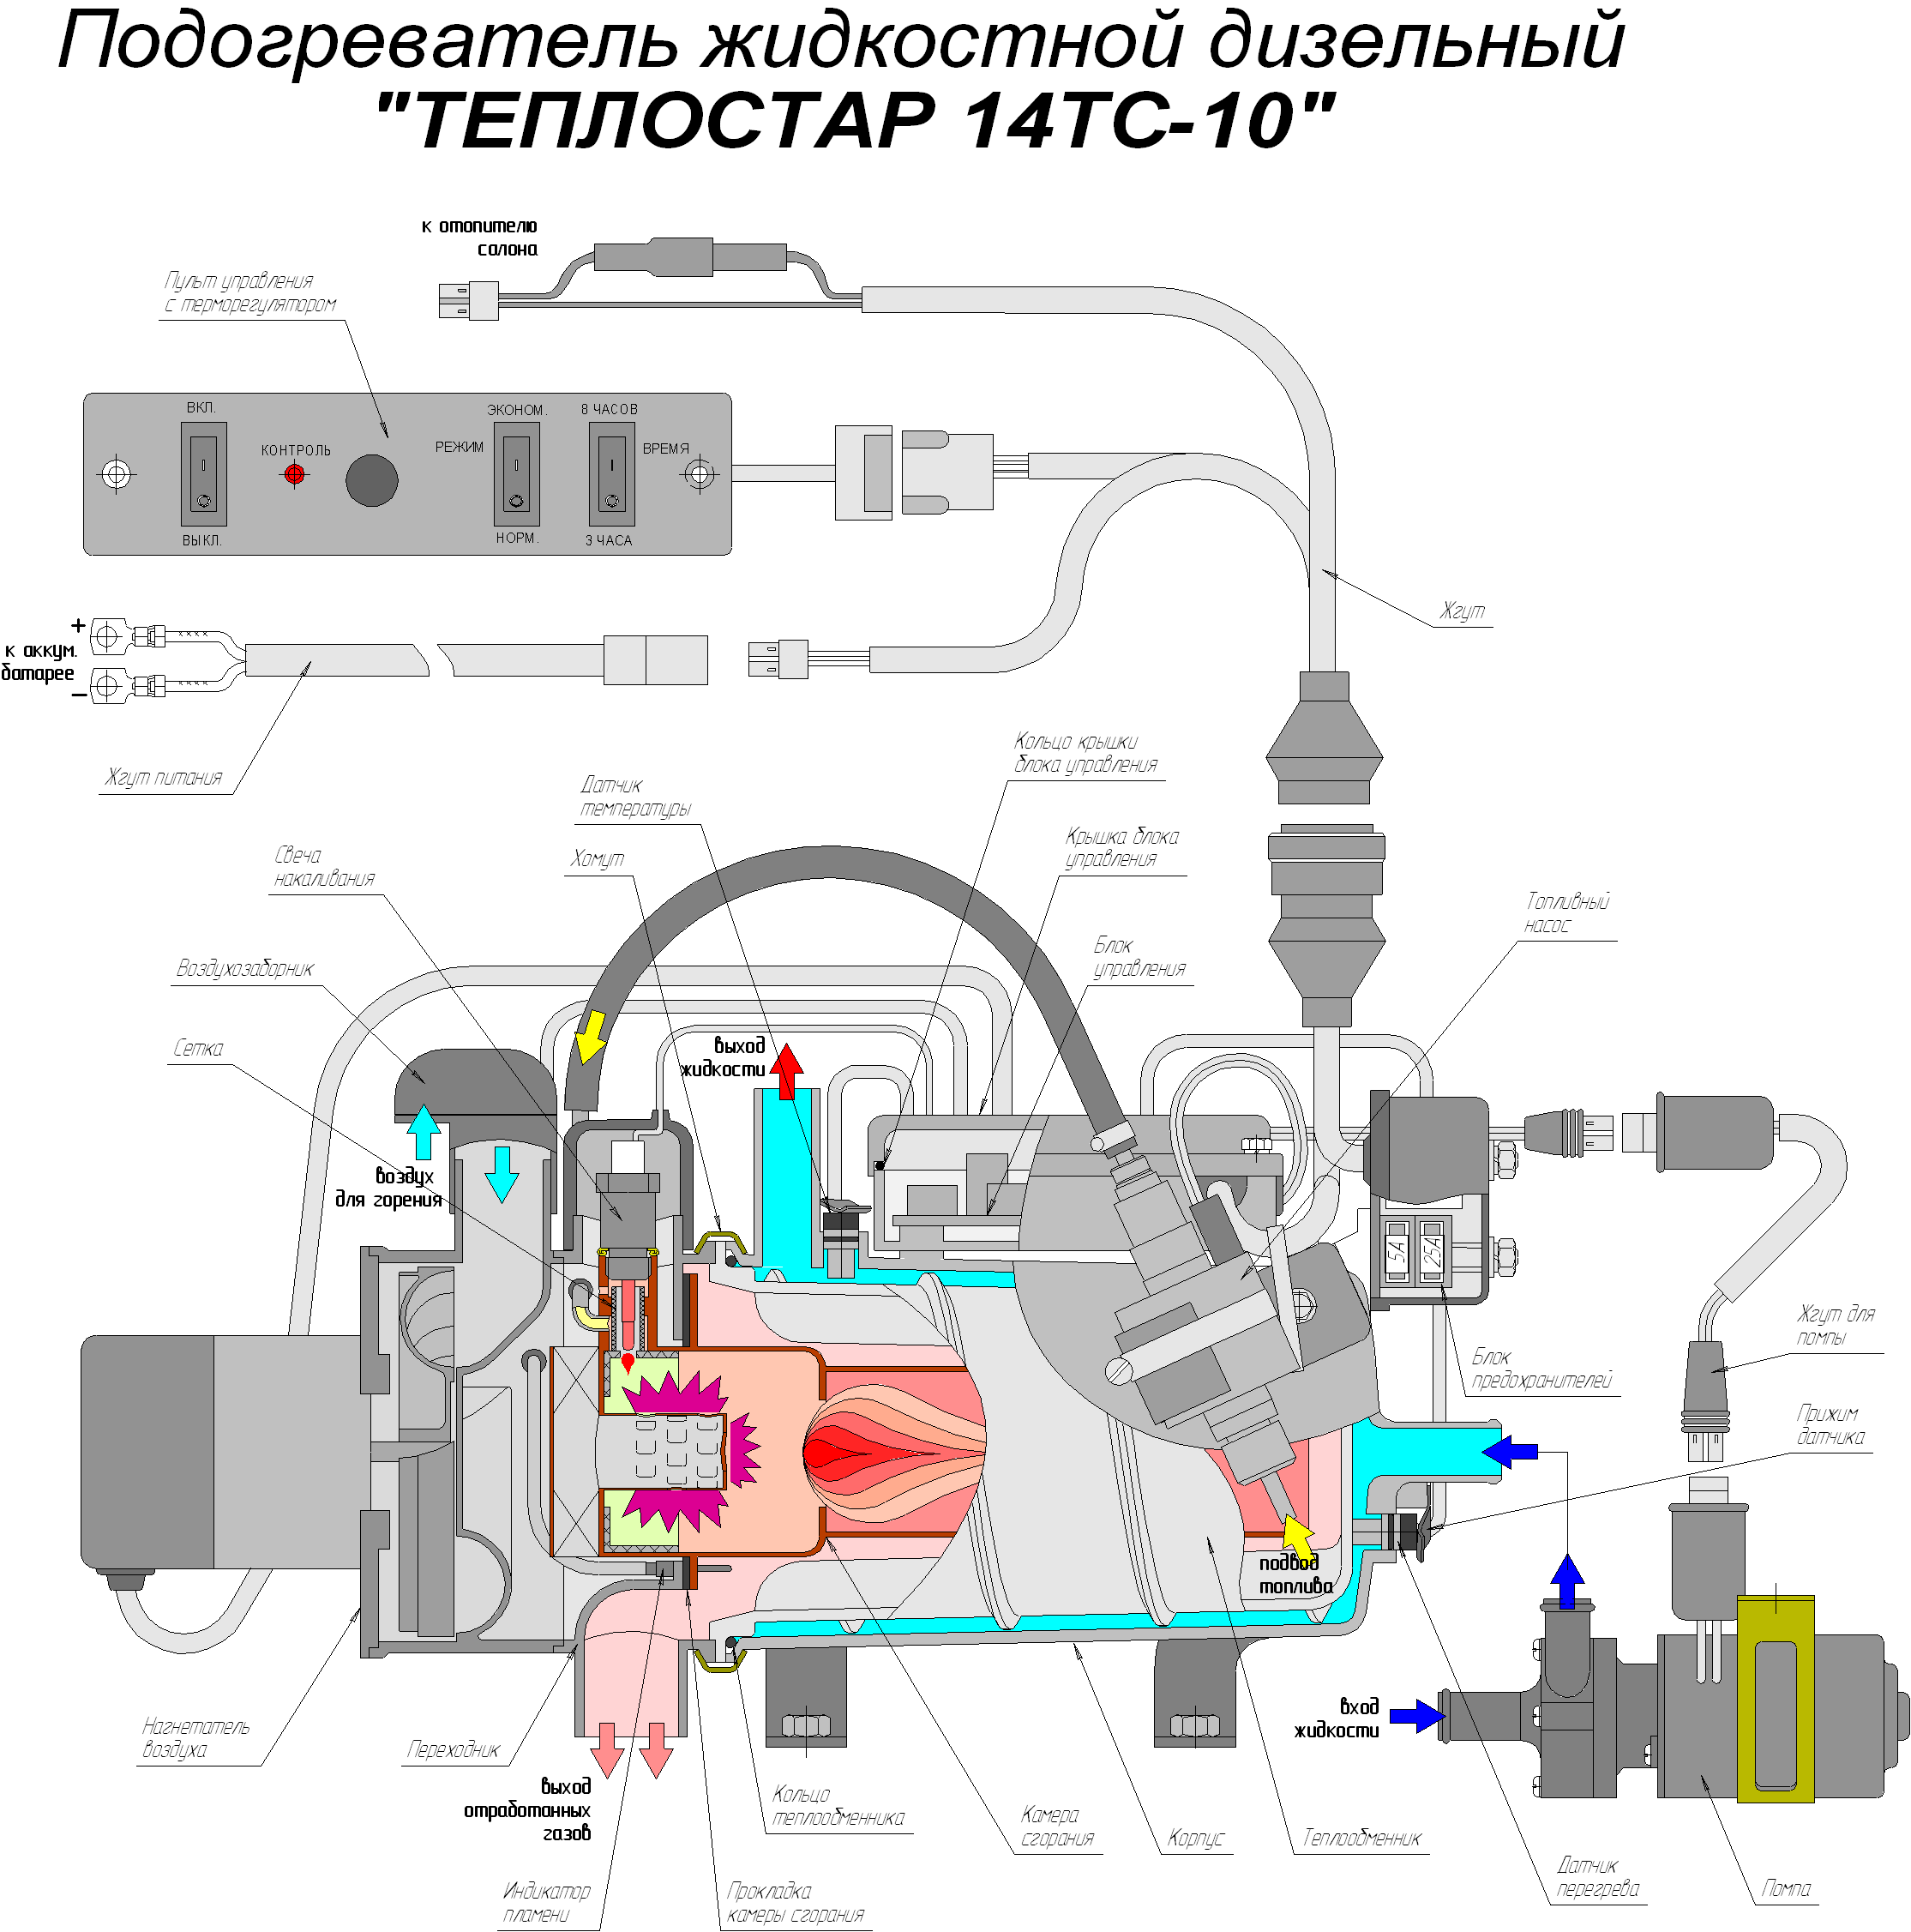 Теплостар 14ТС-10 - жидкостный предпусковой подогреватель двигателя